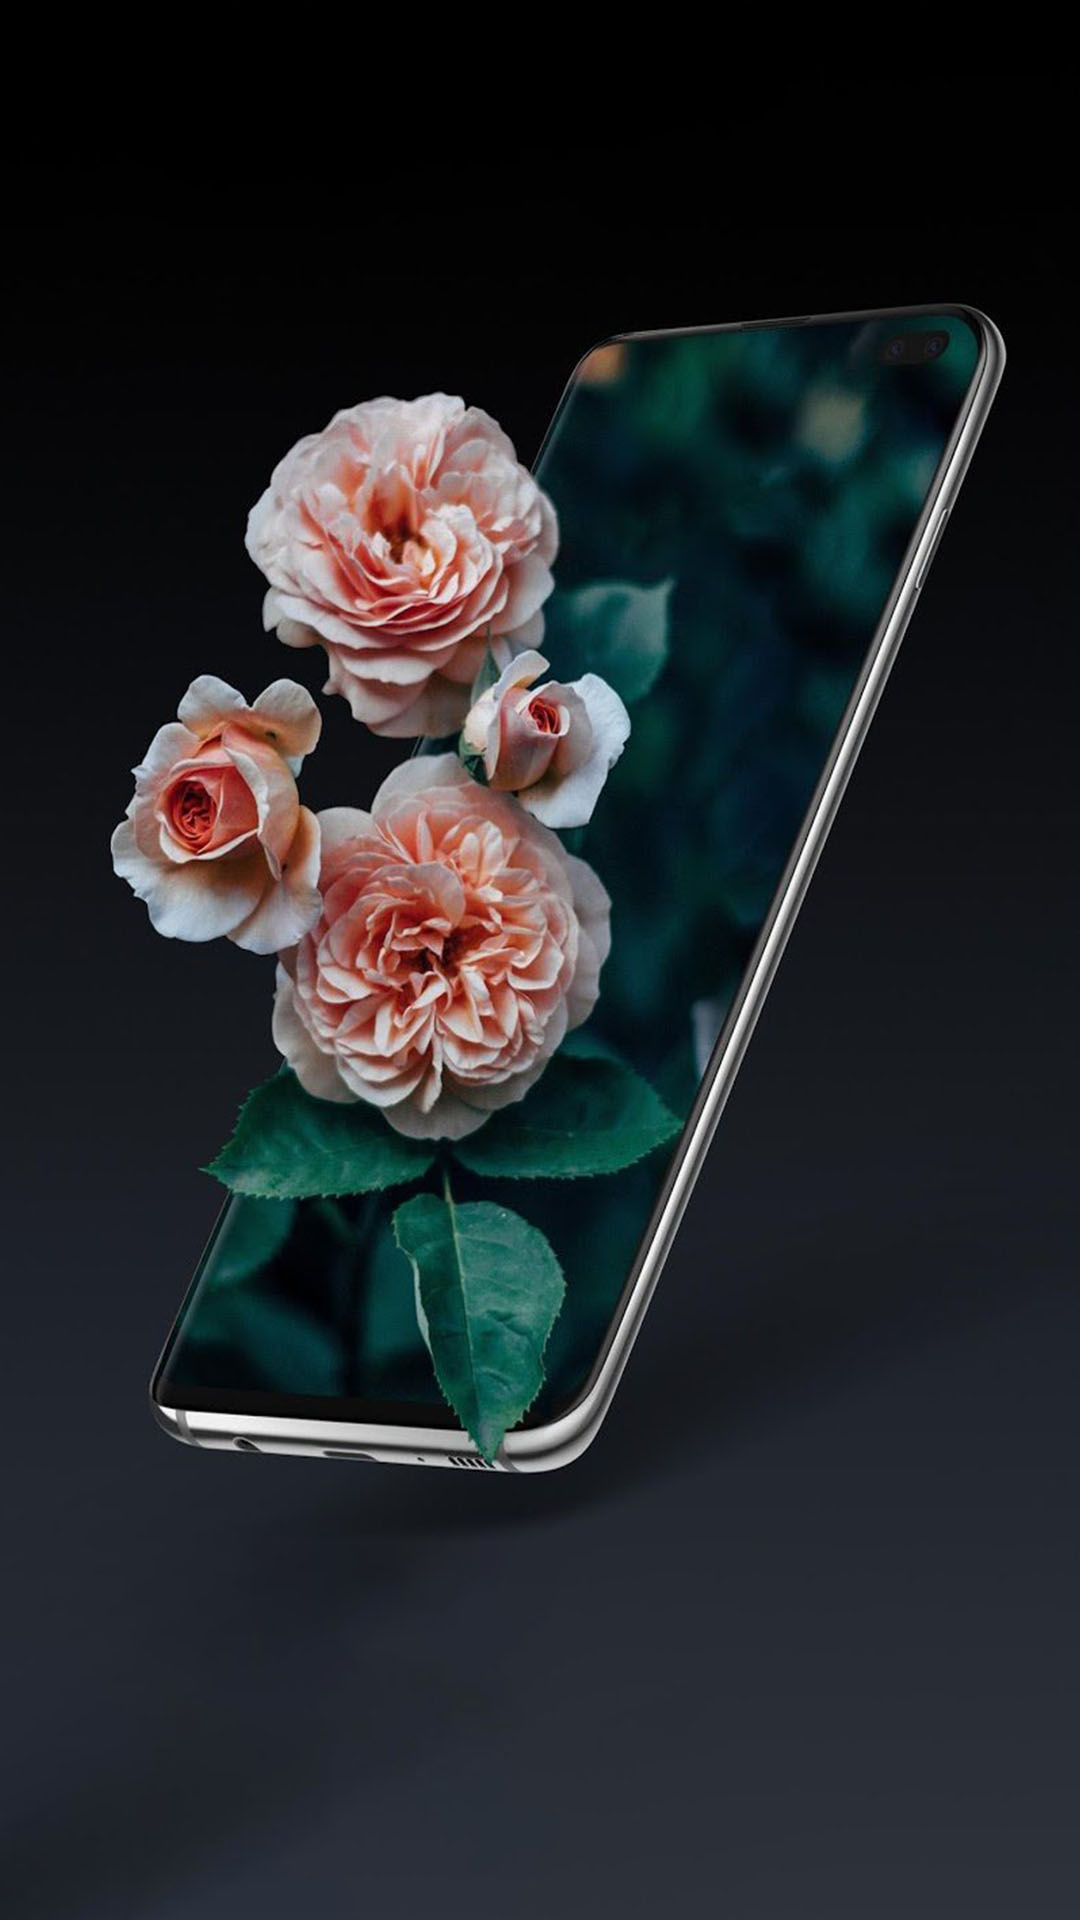 Tải ảnh hoa hồng đẹp về điện thoại thêm cá tính, ấn tượng